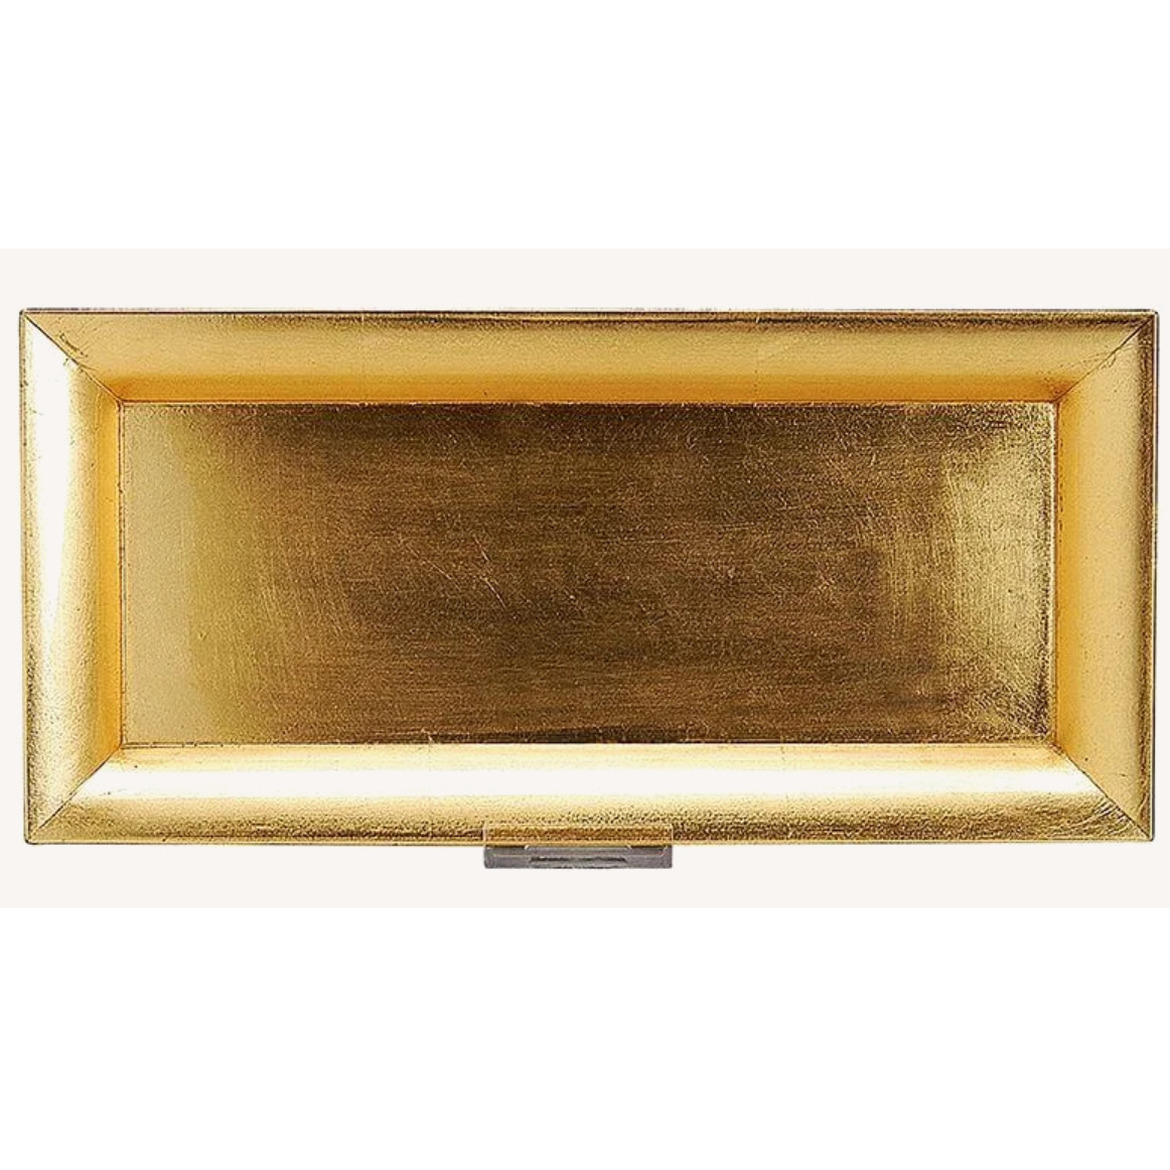 Rechthoekig kaarsenbord/kaarsenplateau goud van kunststof 36 x 17 cm -